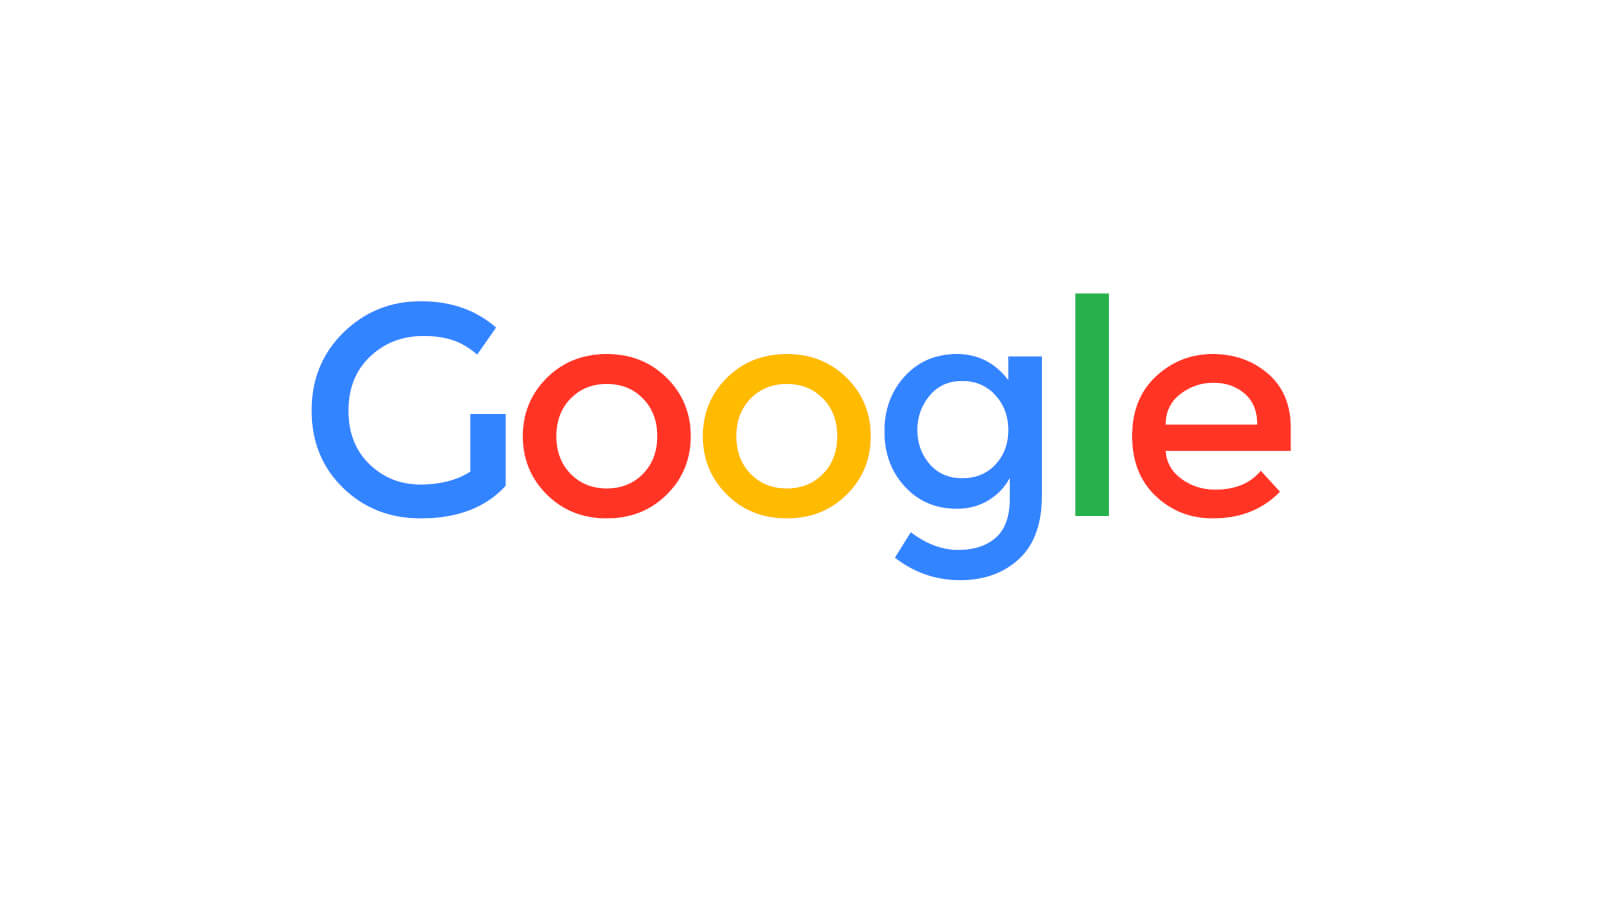 Google çöktü mü?: Youtube, Gmail, Google Analytics ve arama sayfası çalışmıyor